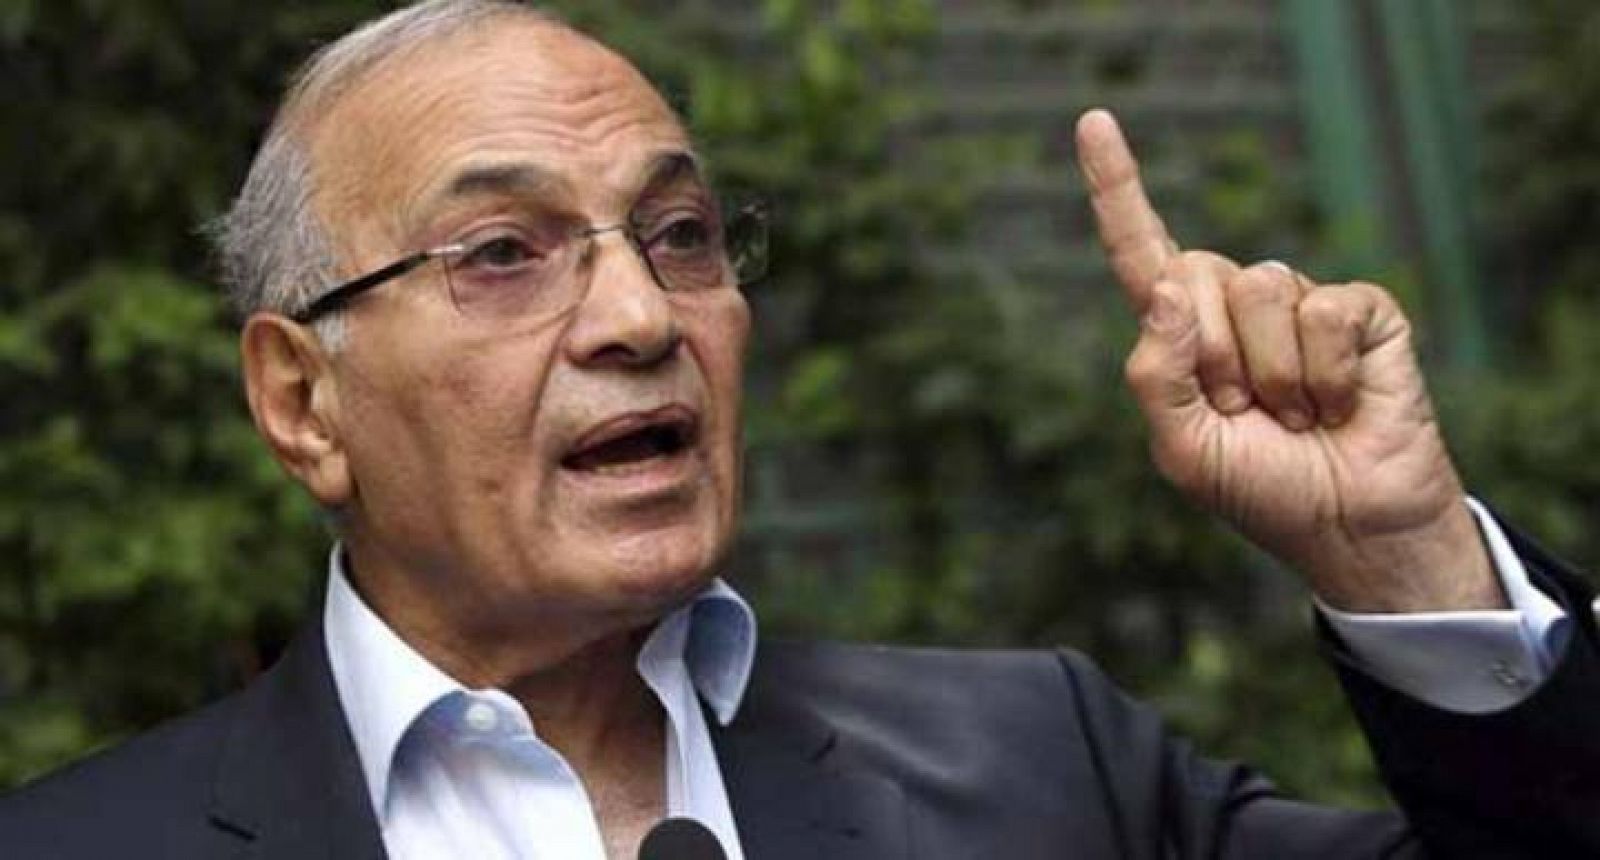 El primer ministro de Mubarak anuncia su intención de volver a competir por la presidencia